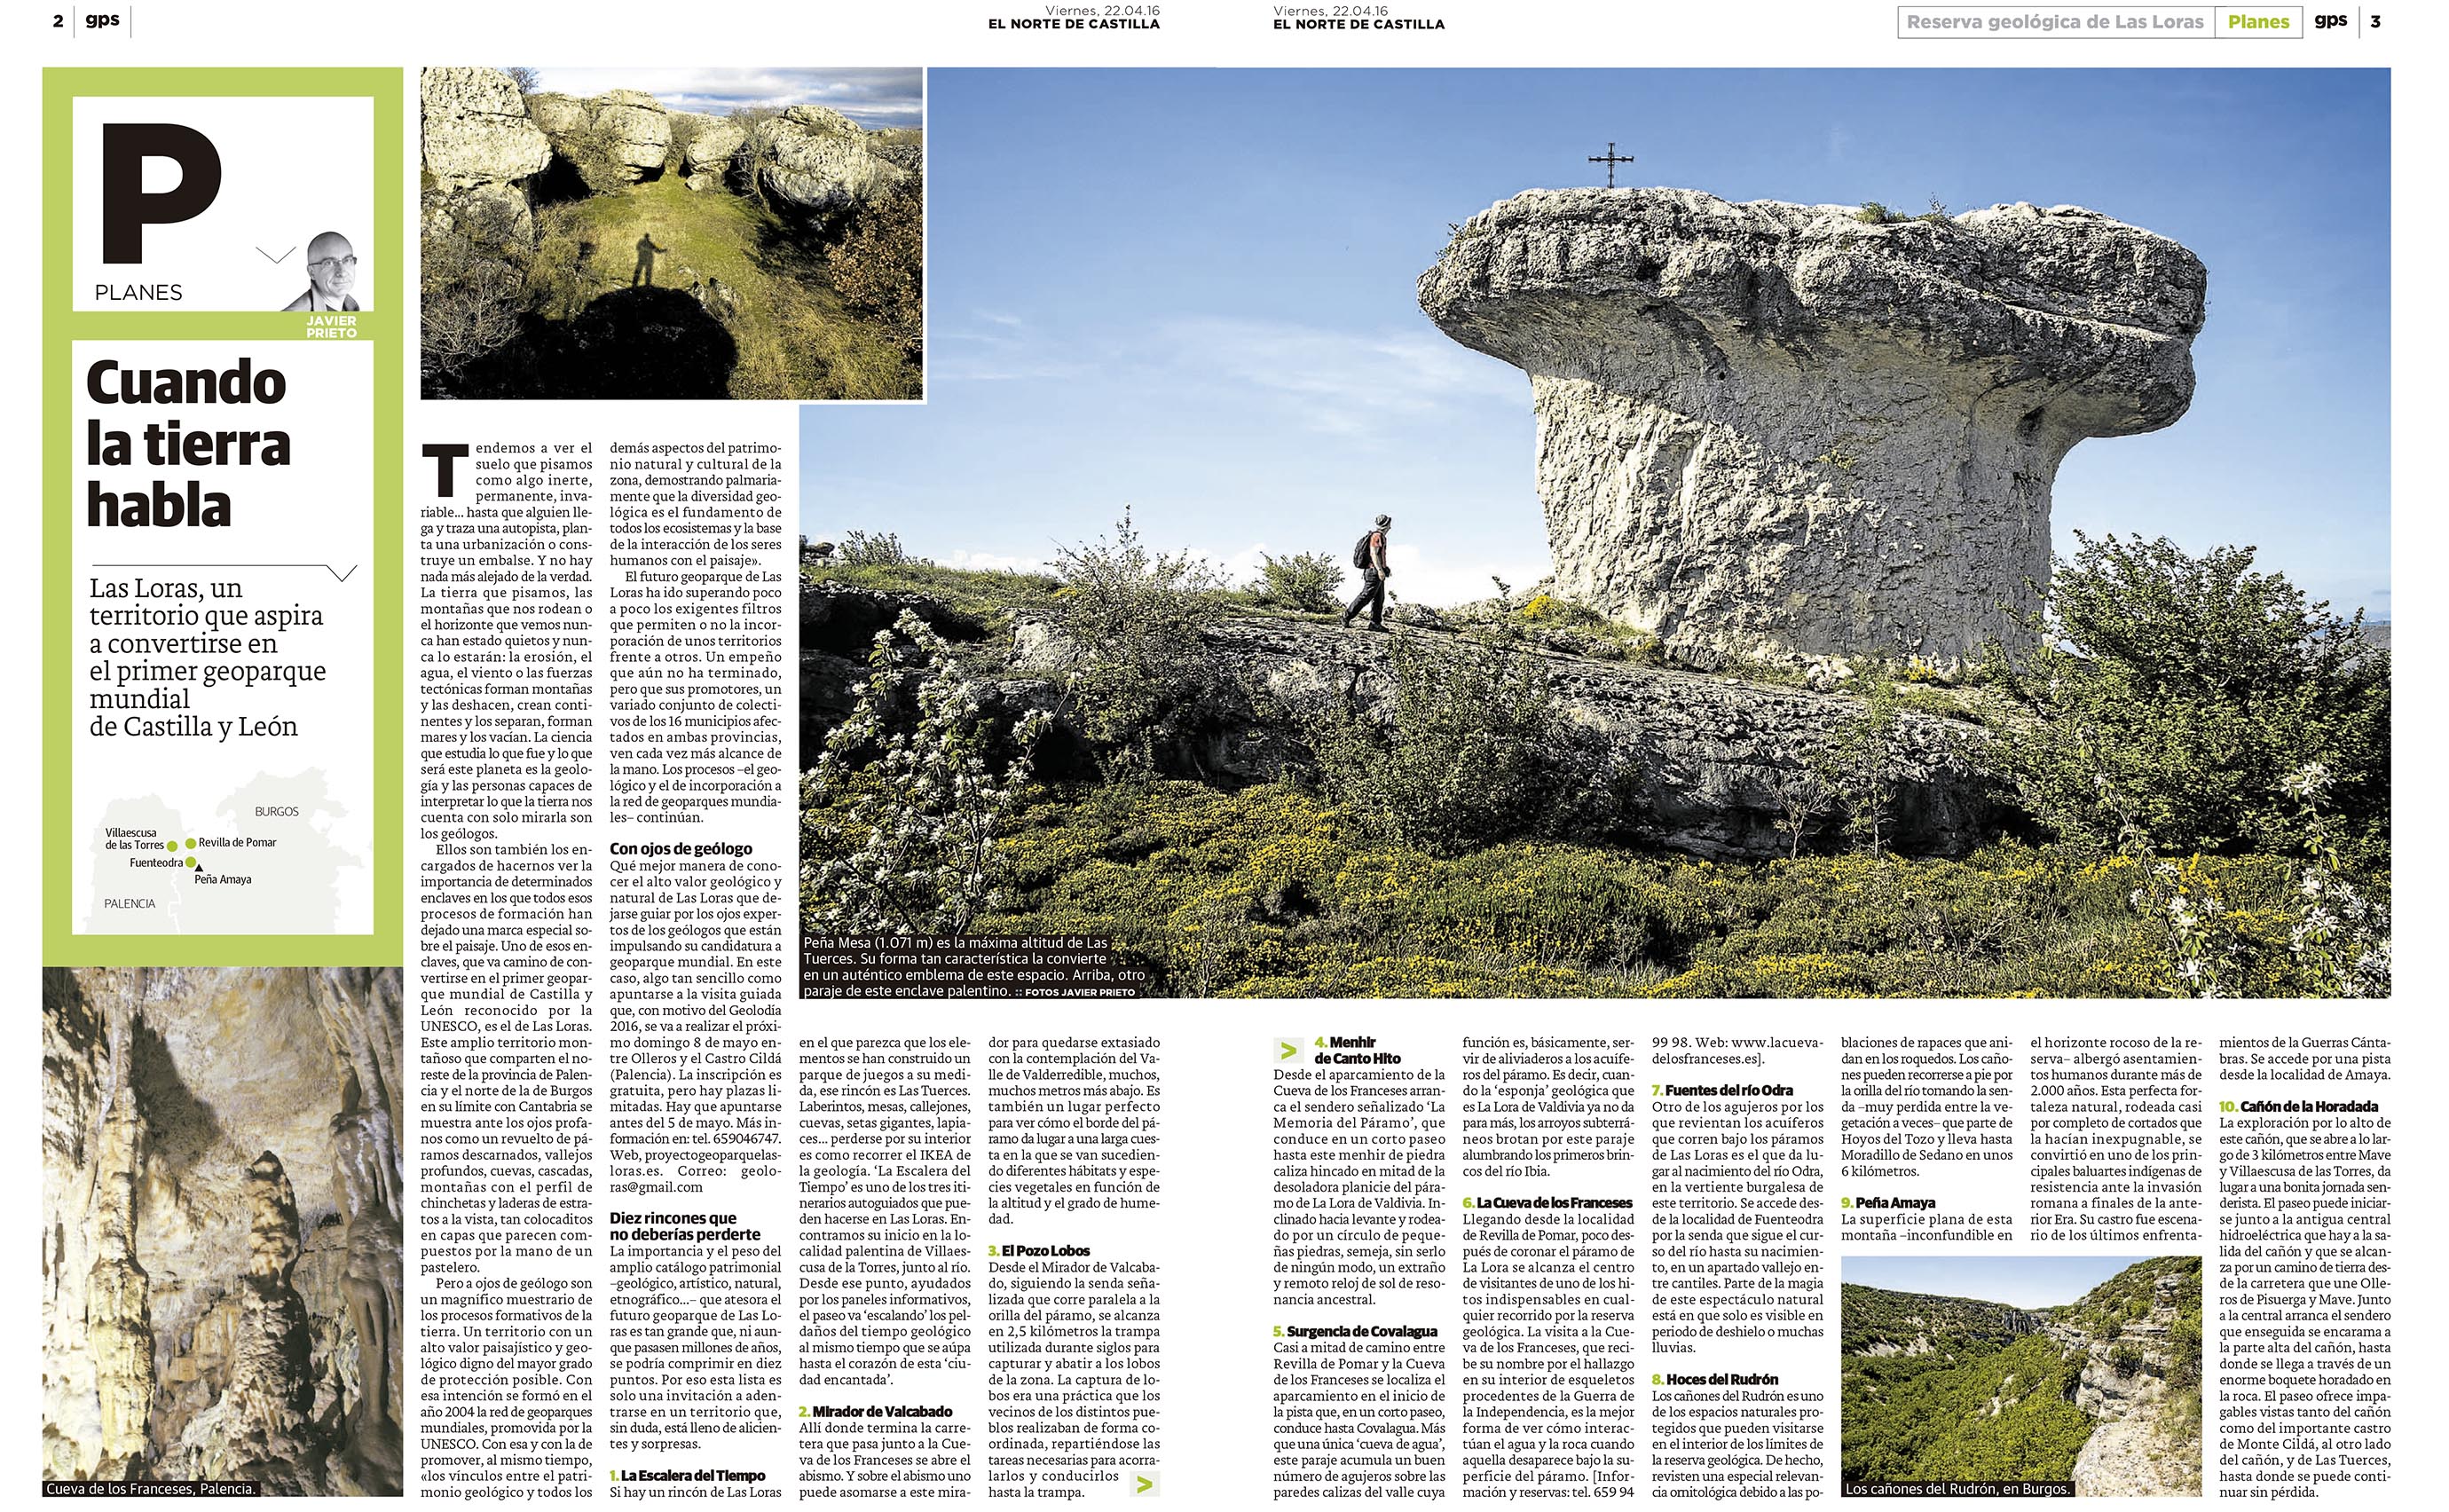 Reportaje de Javier Prieto Gallego sobre Las Loras publicado en EL NORTE DE CASTILLA. 